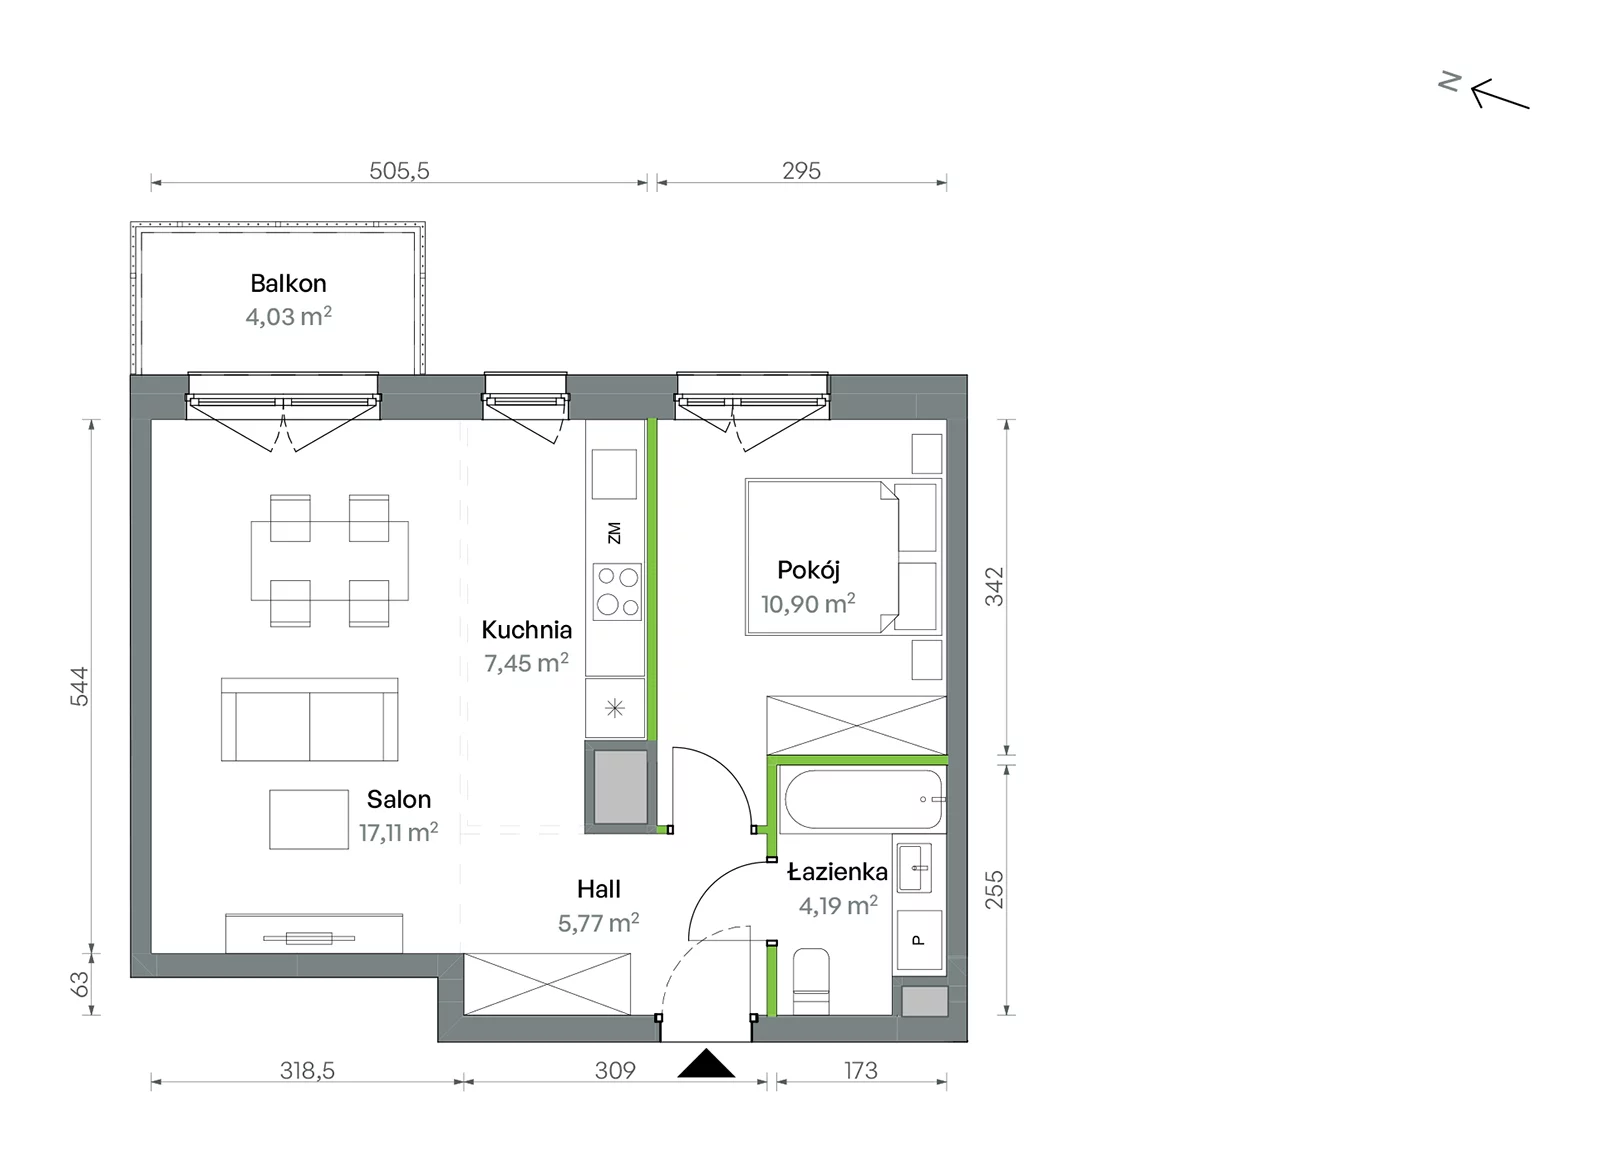 Mieszkanie 45,42 m², piętro 4, oferta nr 1/A/2/67, Oliwska Vita etap II, Warszawa, Targówek, Bródno, ul. Oliwska 11